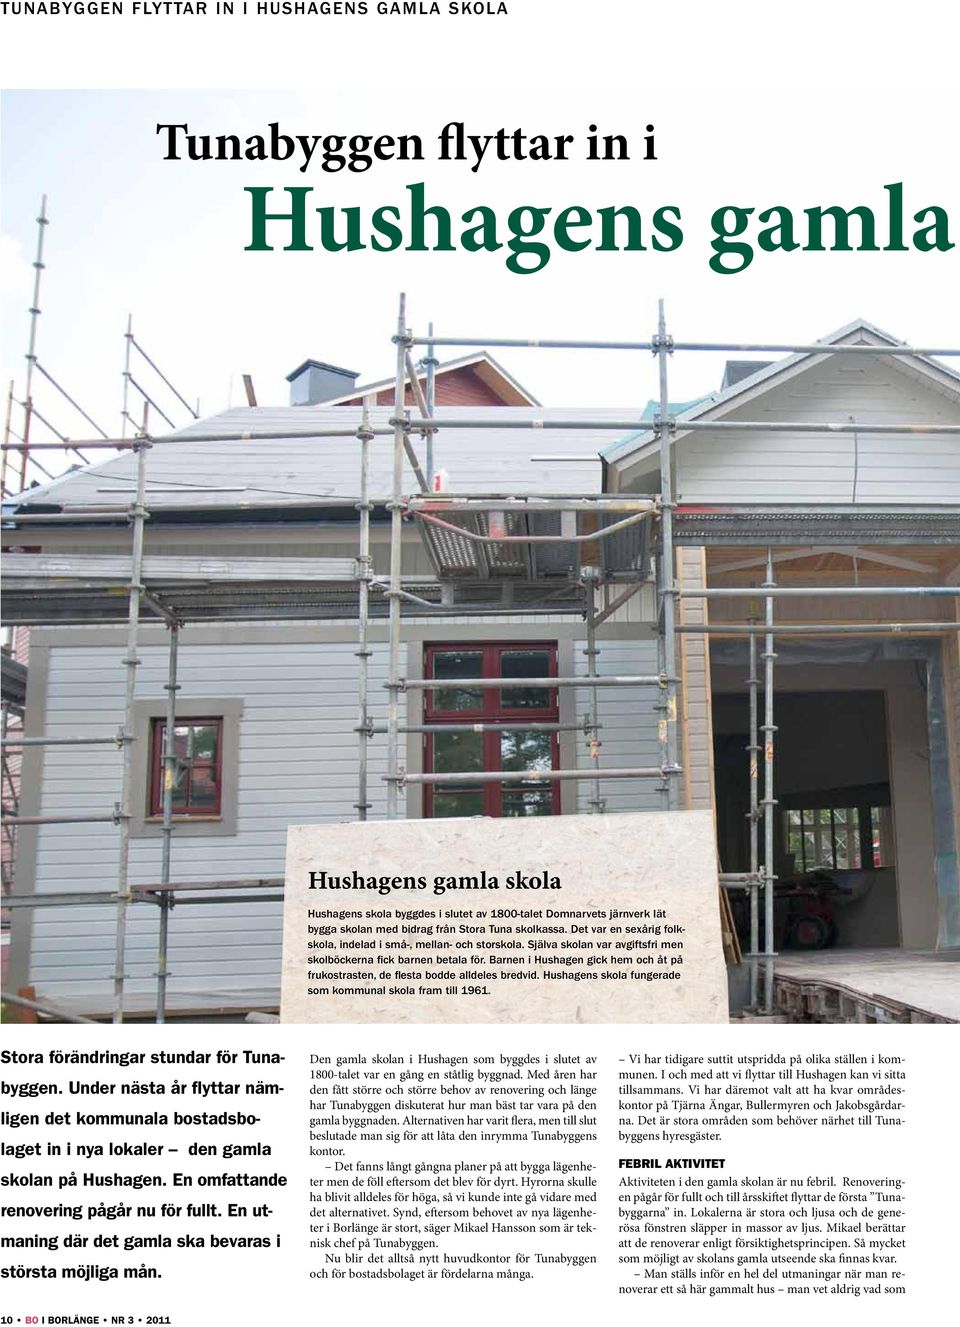 Barnen i Hushagen gick hem och åt på frukostrasten, de flesta bodde alldeles bredvid. Hushagens skola fungerade som kommunal skola fram till 1961. Stora förändringar stundar för Tunabyggen.